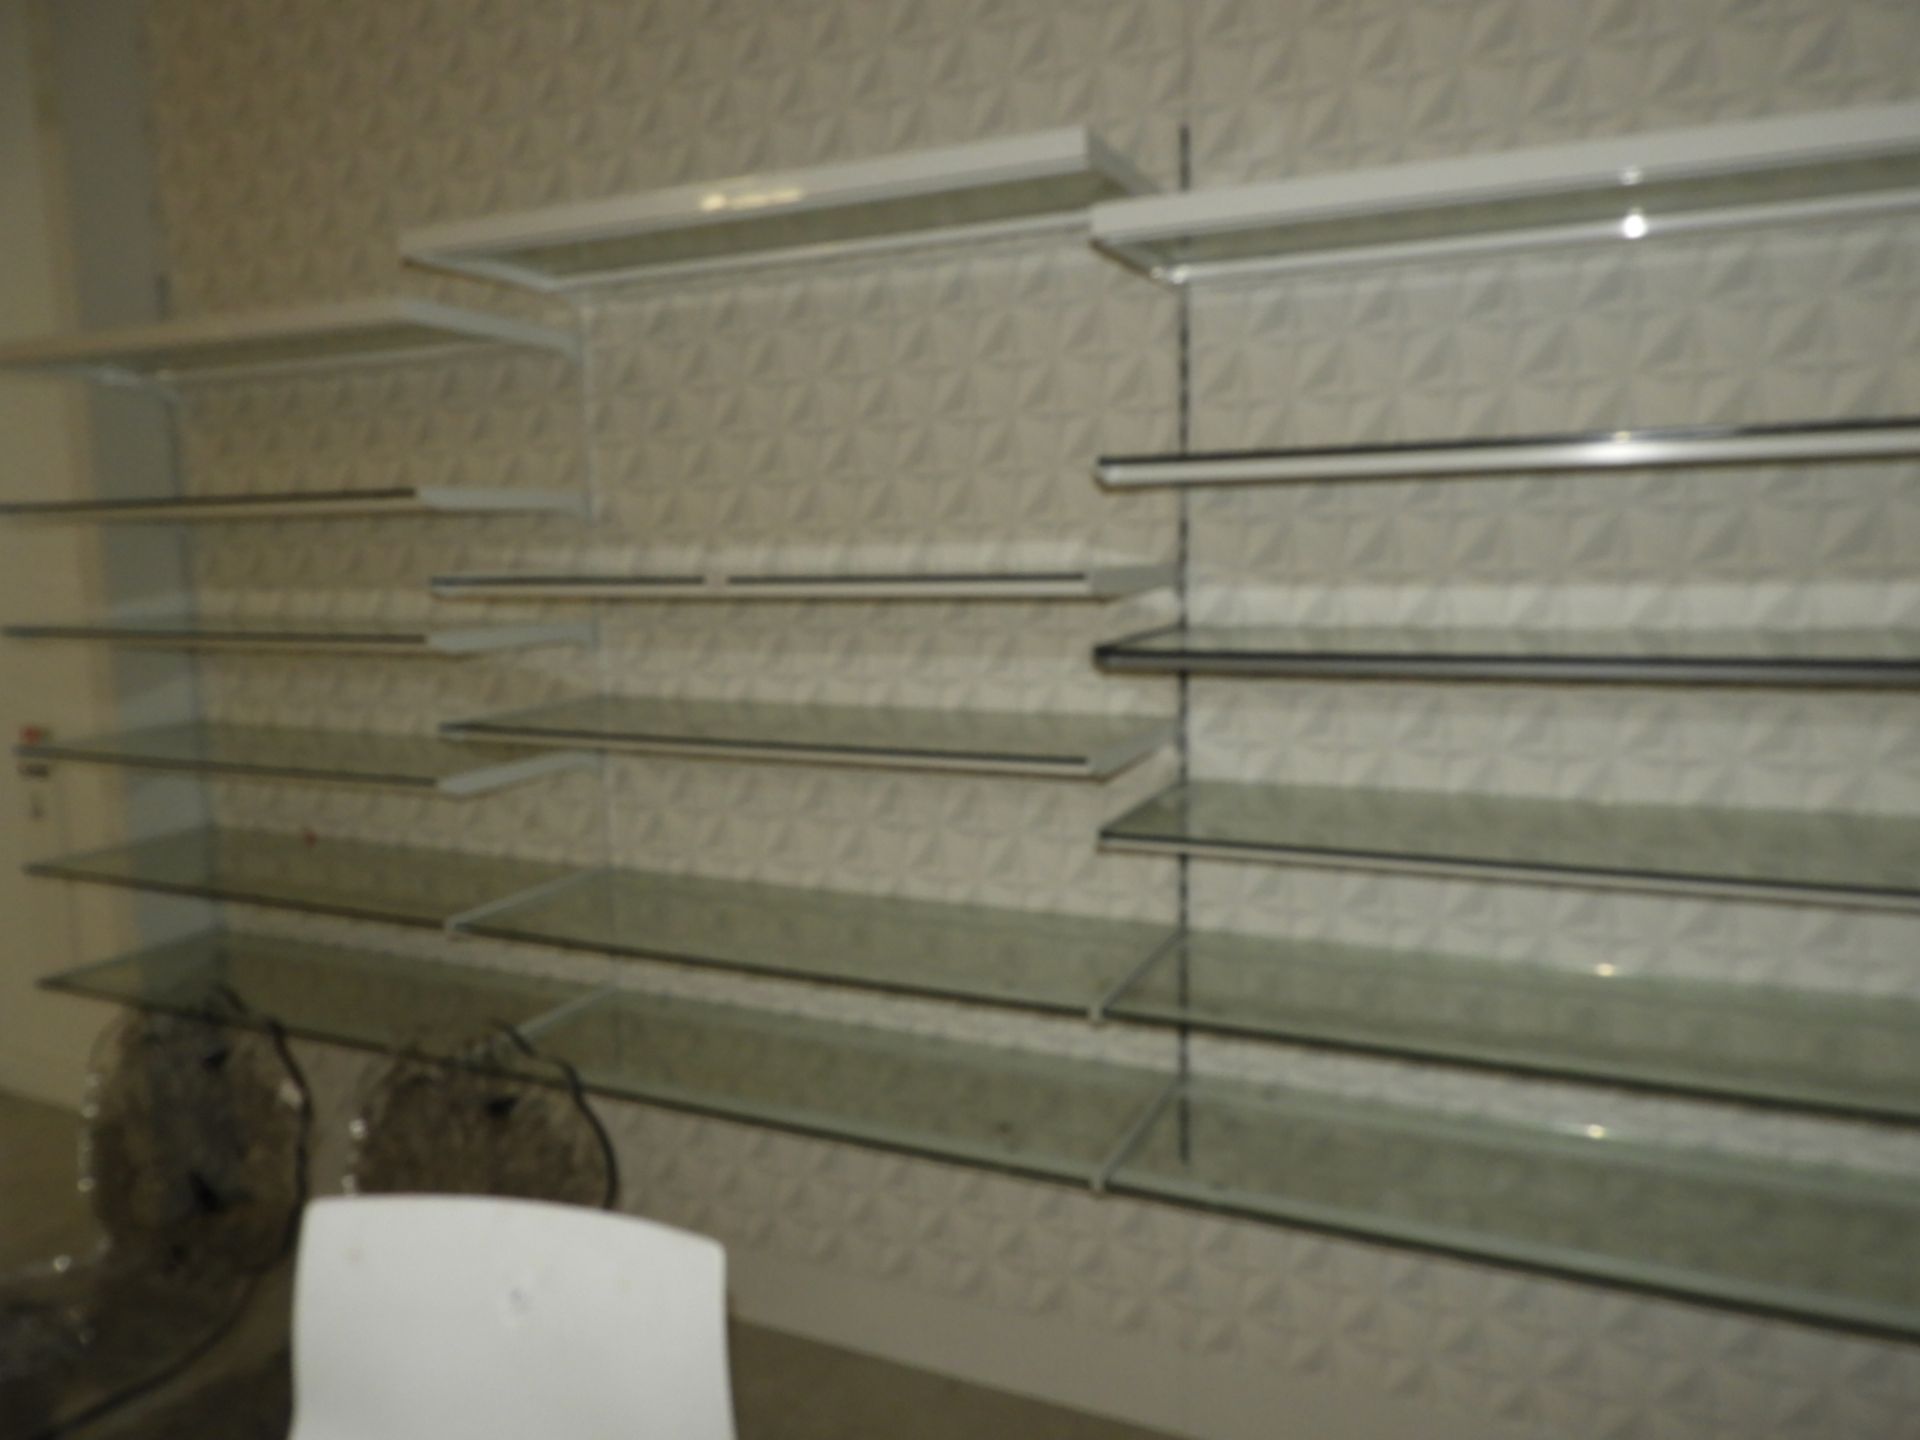 *Seventeen Wall Mounted Plate Glass Shelves (wall